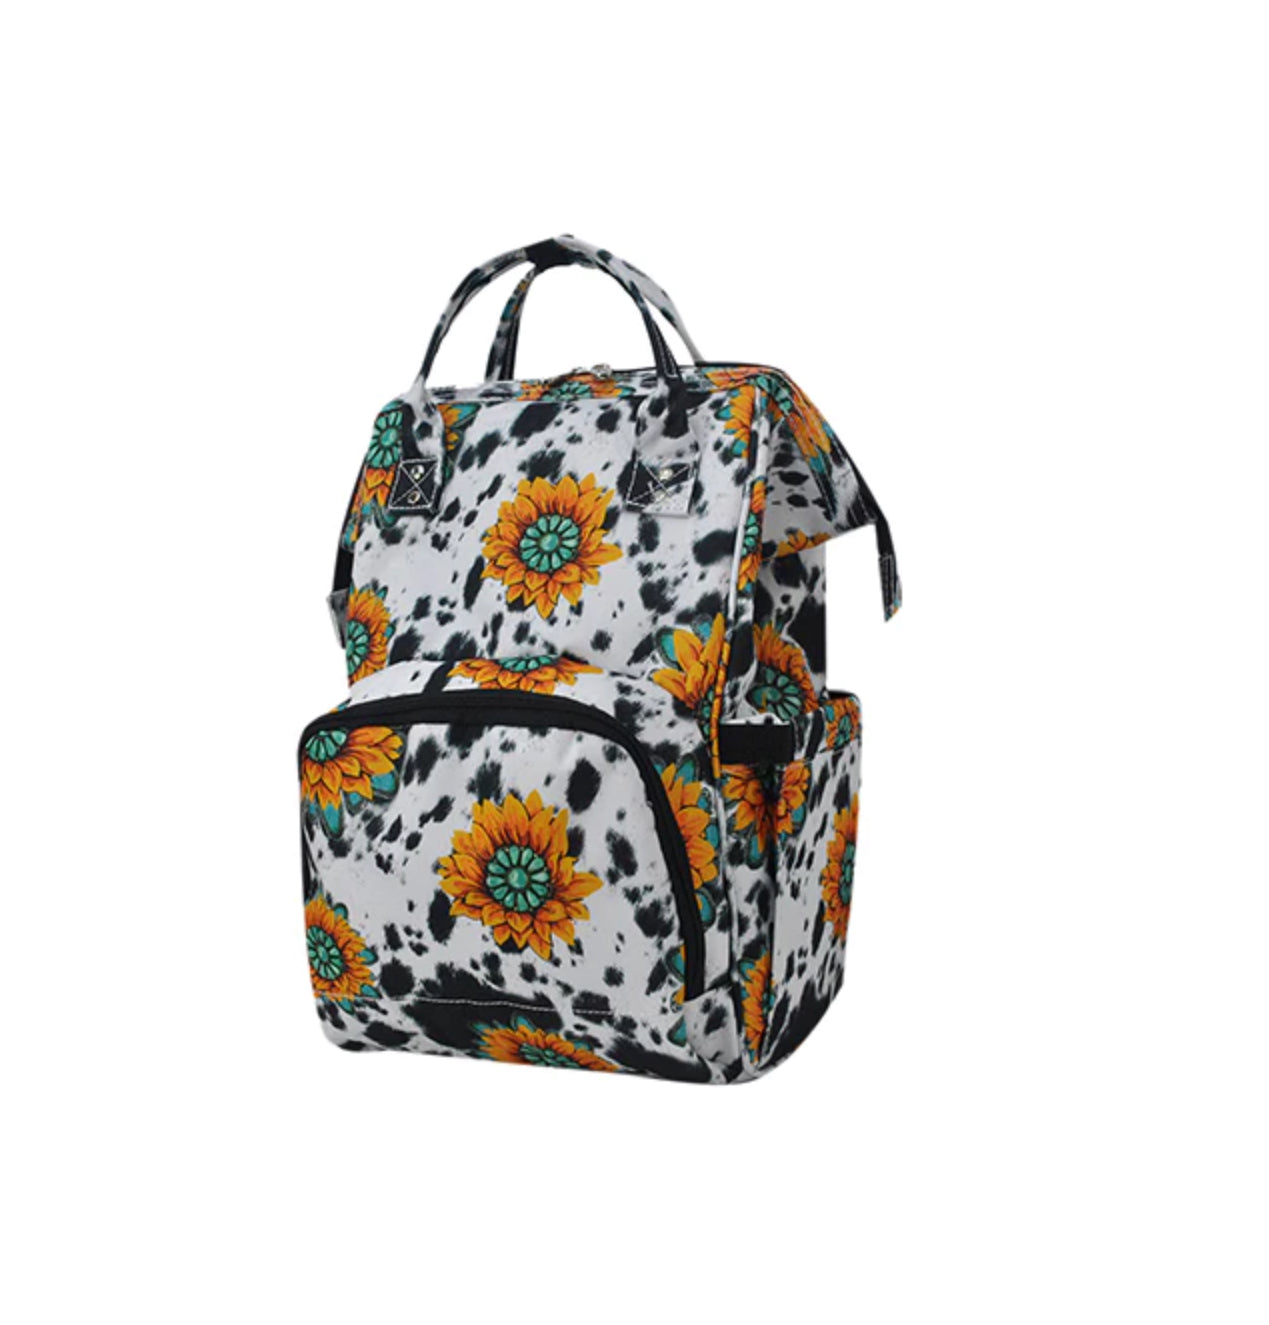 Sunflower Farm Travel/Diaper Bag